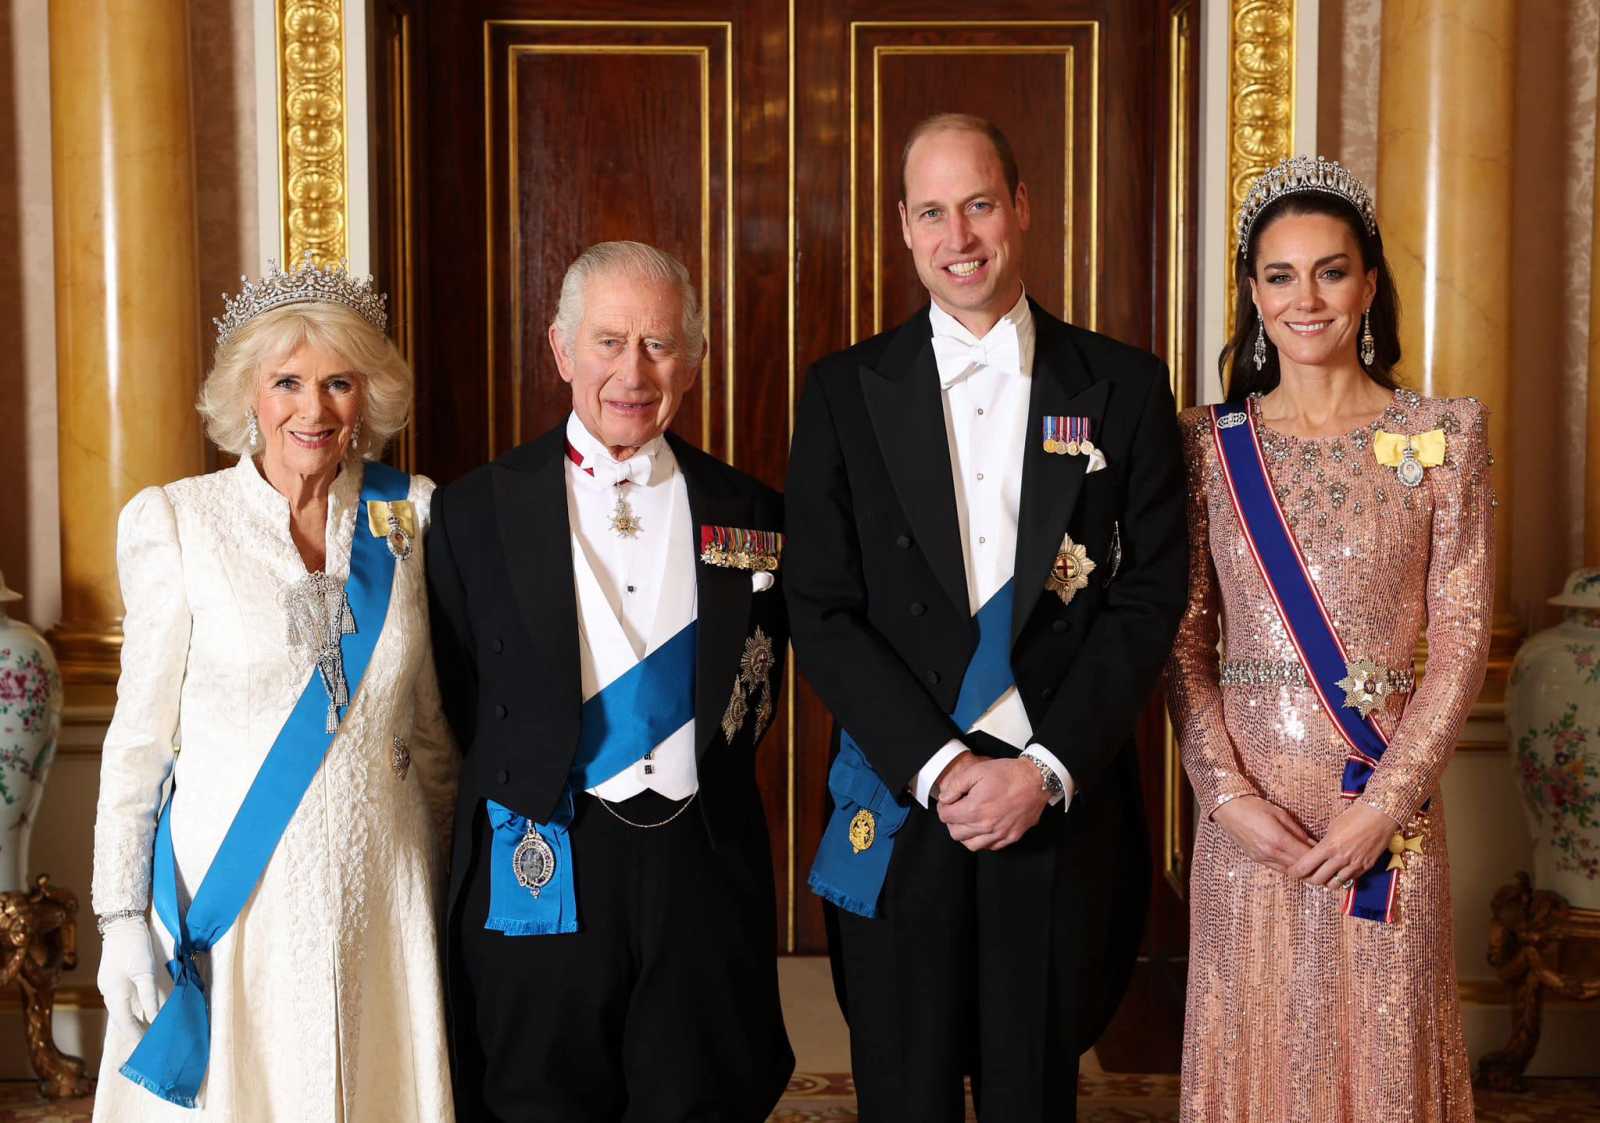 December eleji családi kép | Fotó forrása: The Royal Family/Facebook